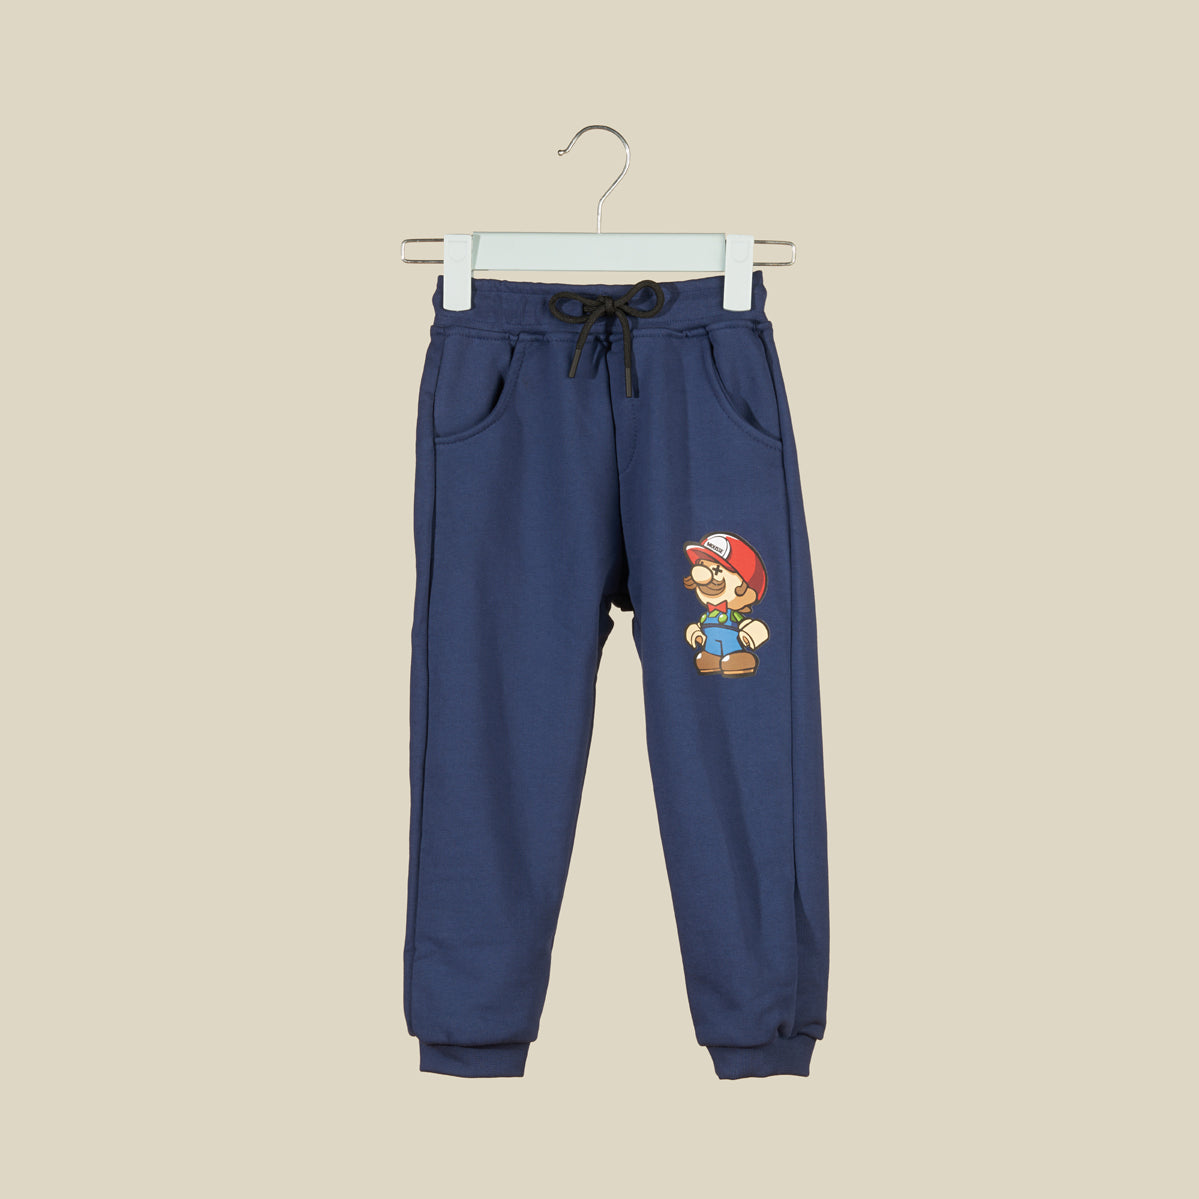 Pantalone jogger in tuta blu con Super Mario